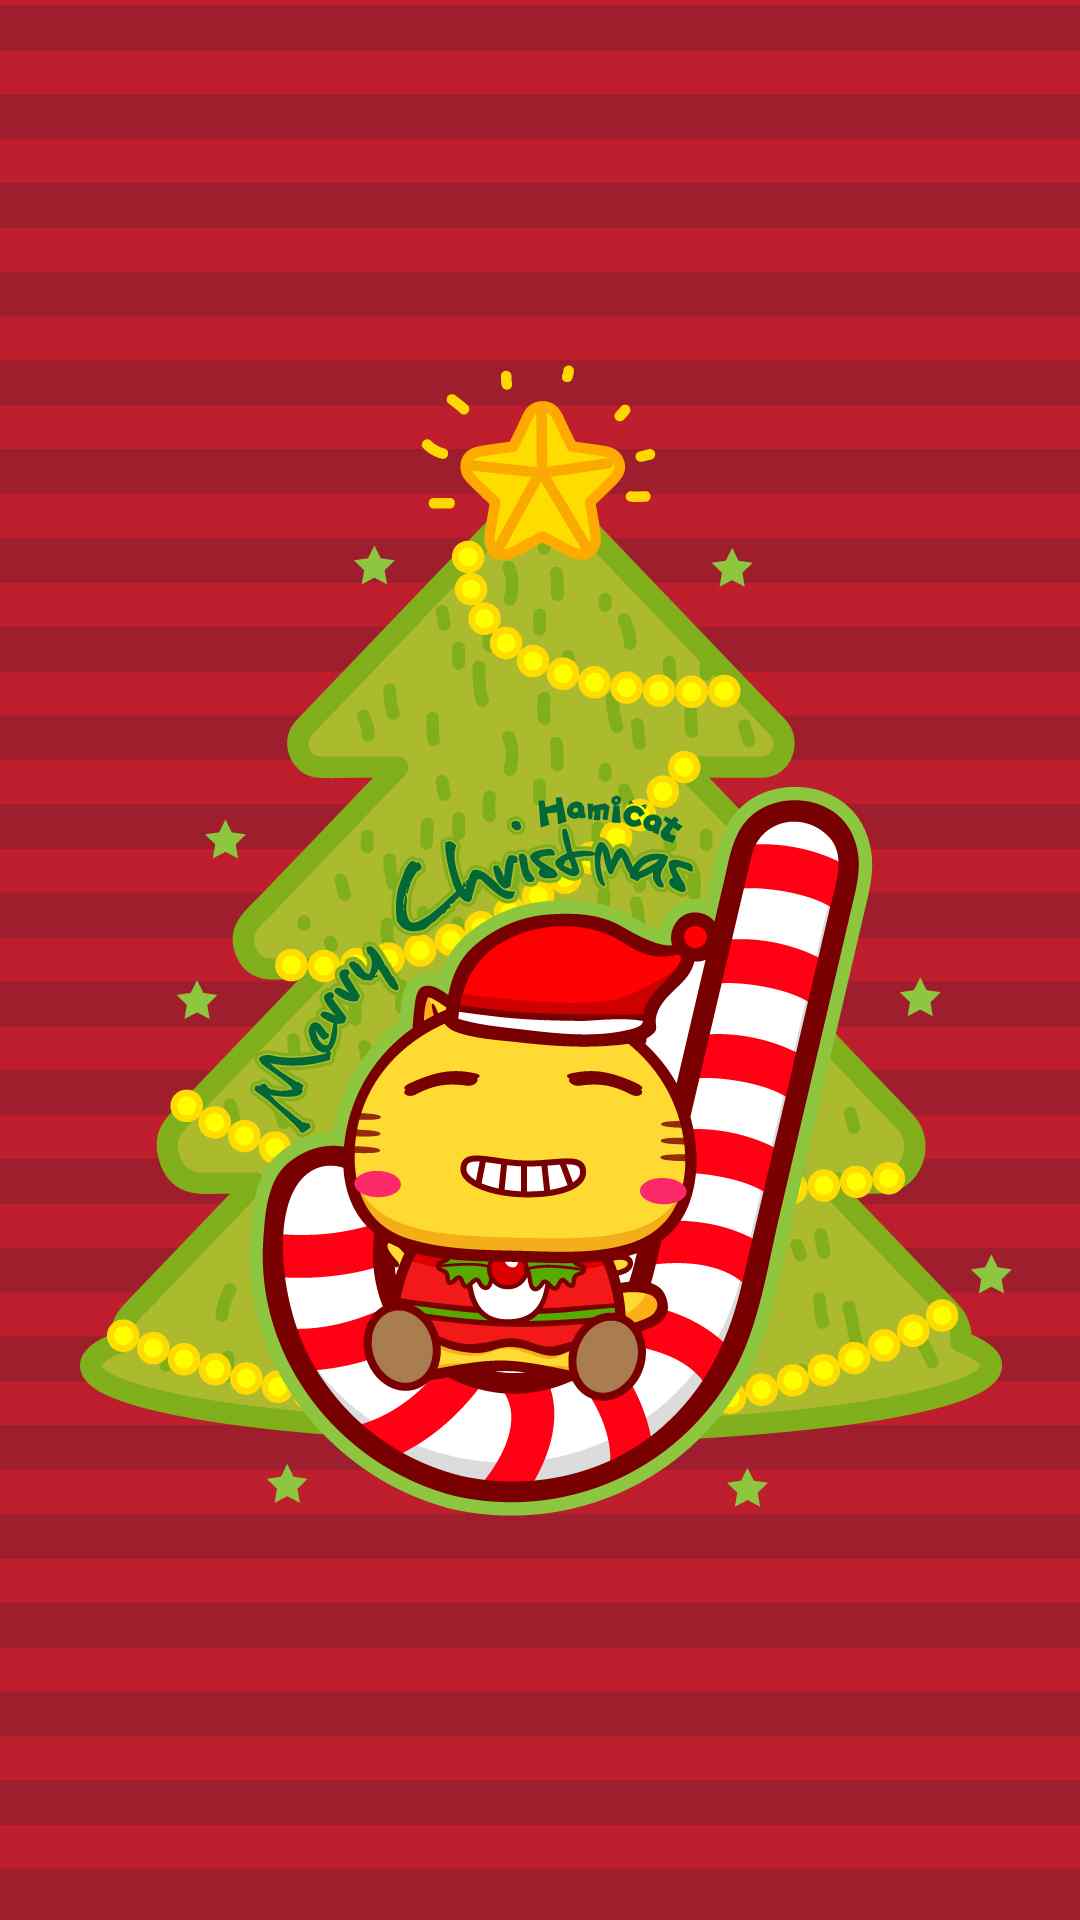 哈咪猫圣诞节可爱动漫手机壁纸